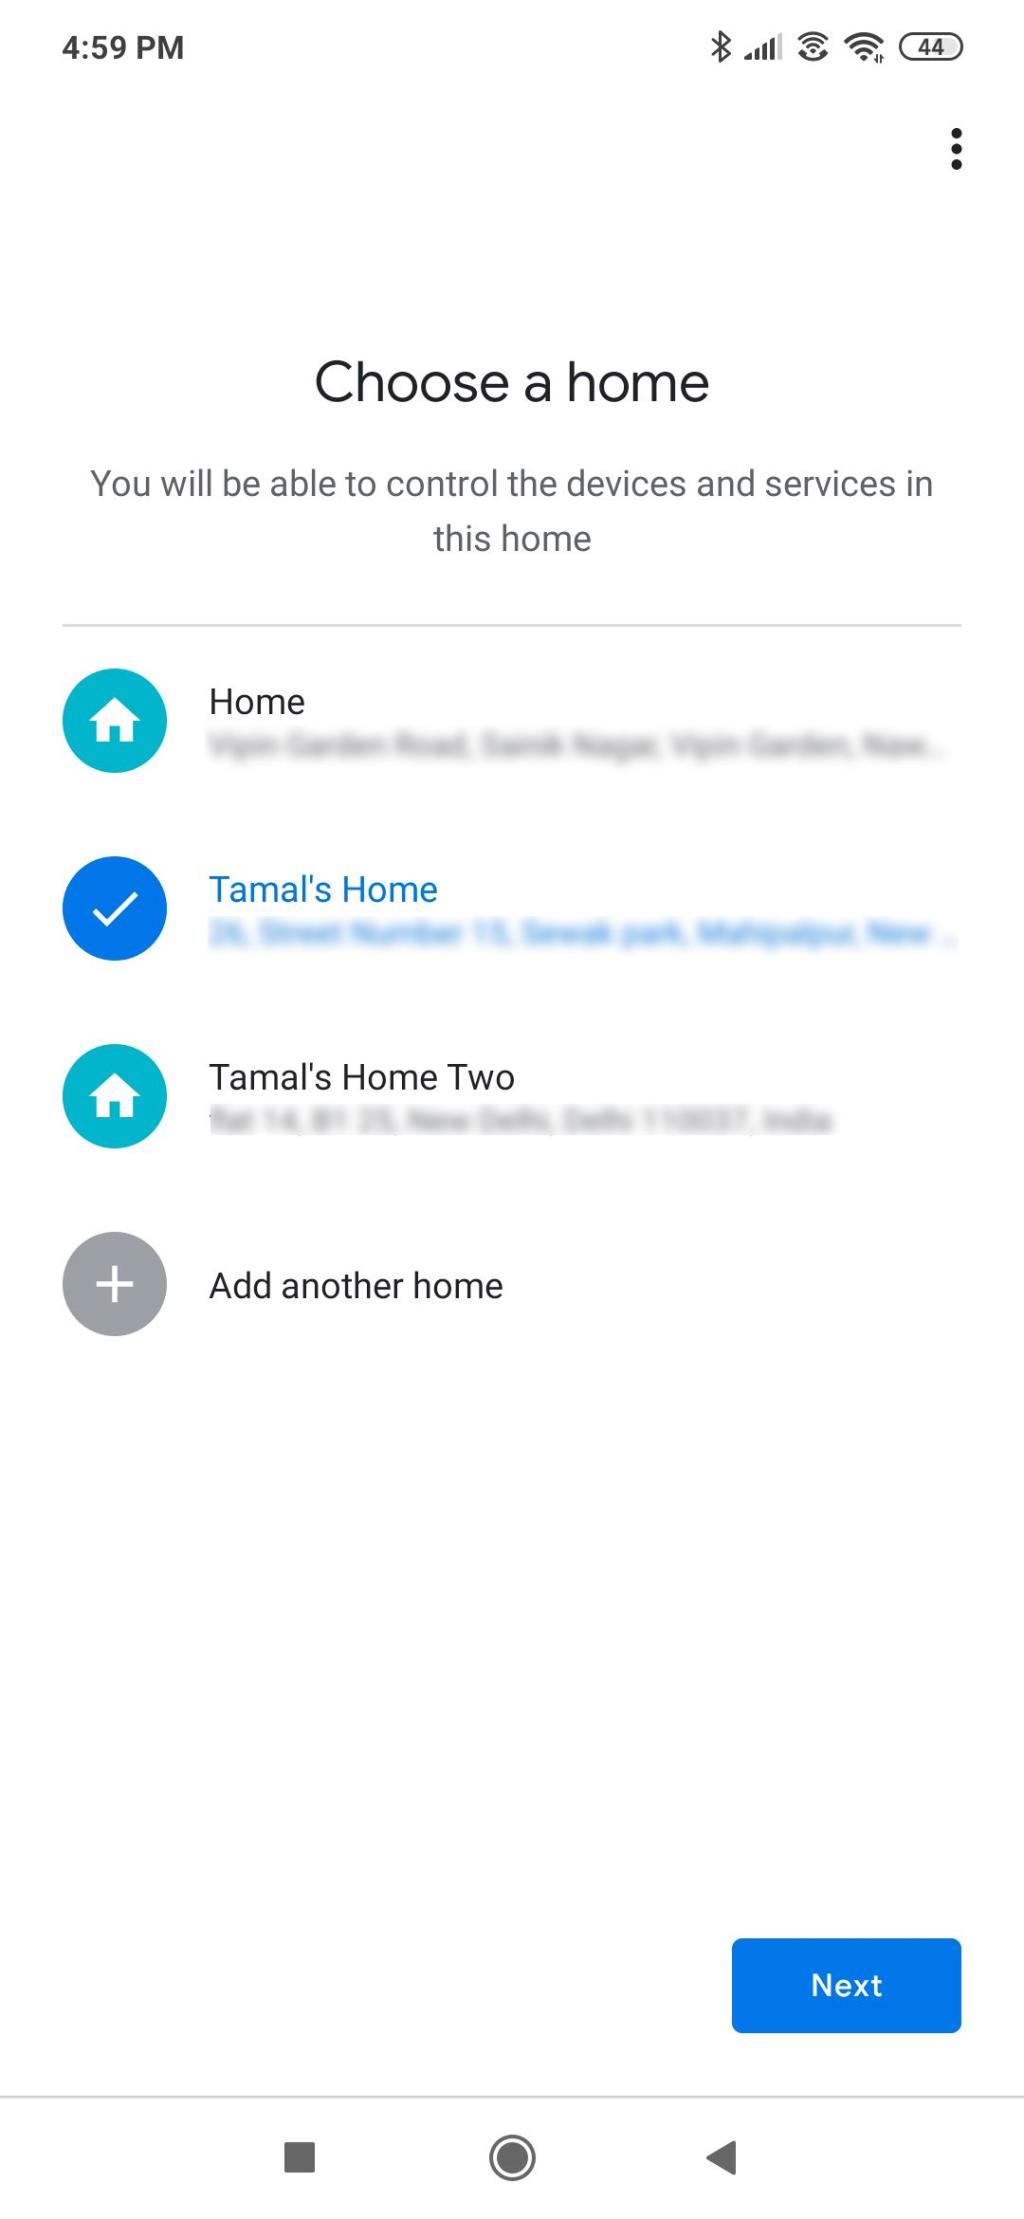 Ce este aplicația Google Home și pentru ce este folosită?